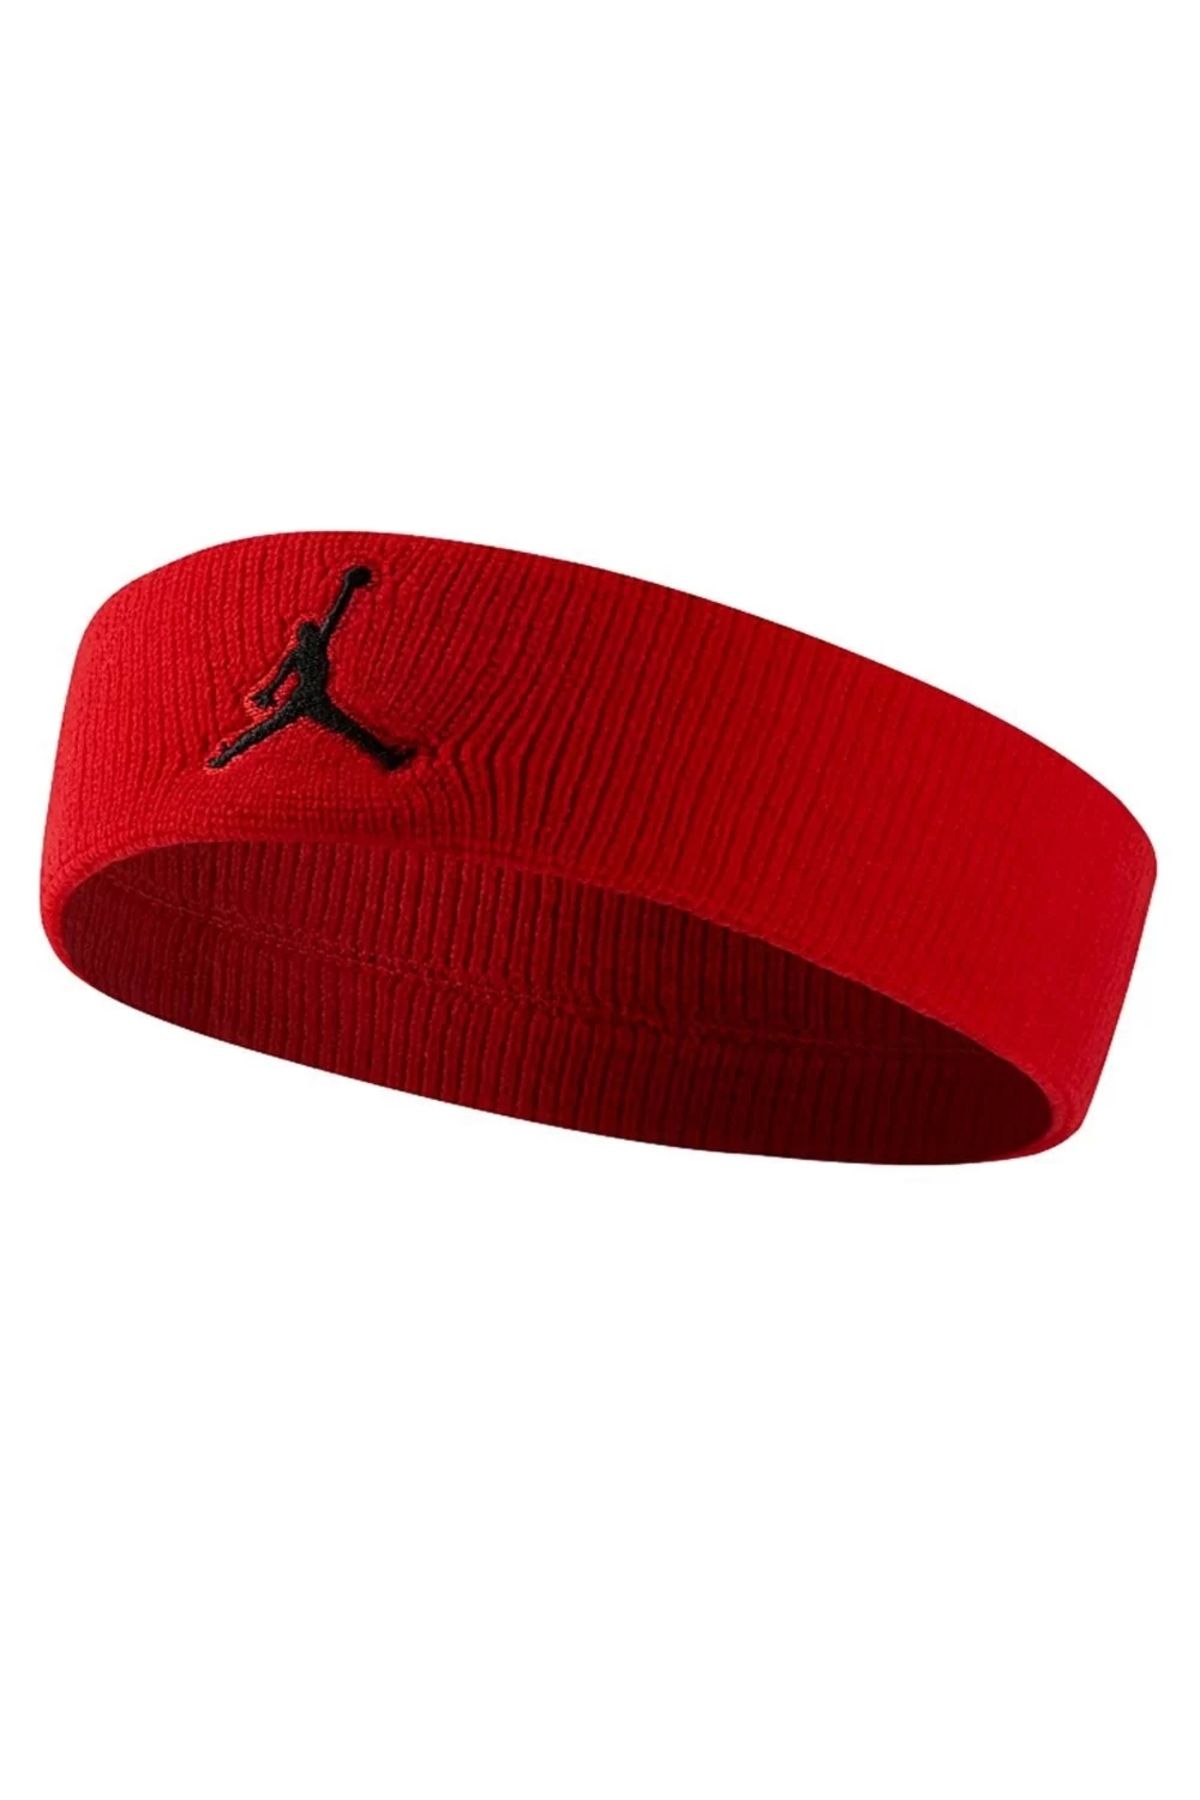 Nike Jordan Headband